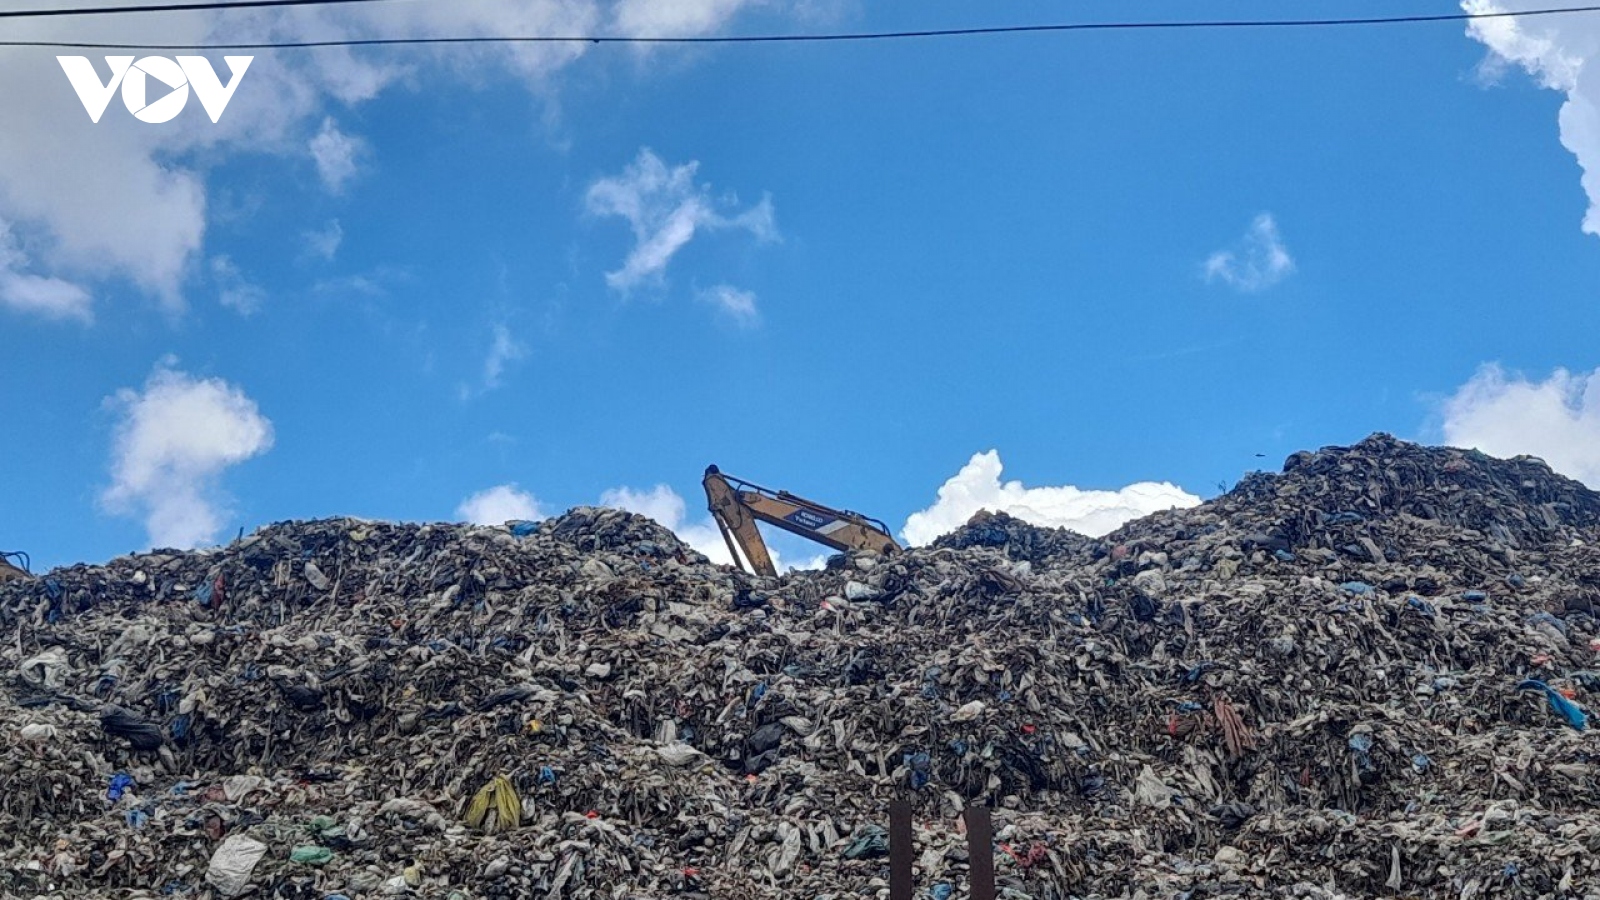 Phạt 510 triệu đồng, đình chỉ hoạt động nhà máy xử lý rác vi phạm môi trường